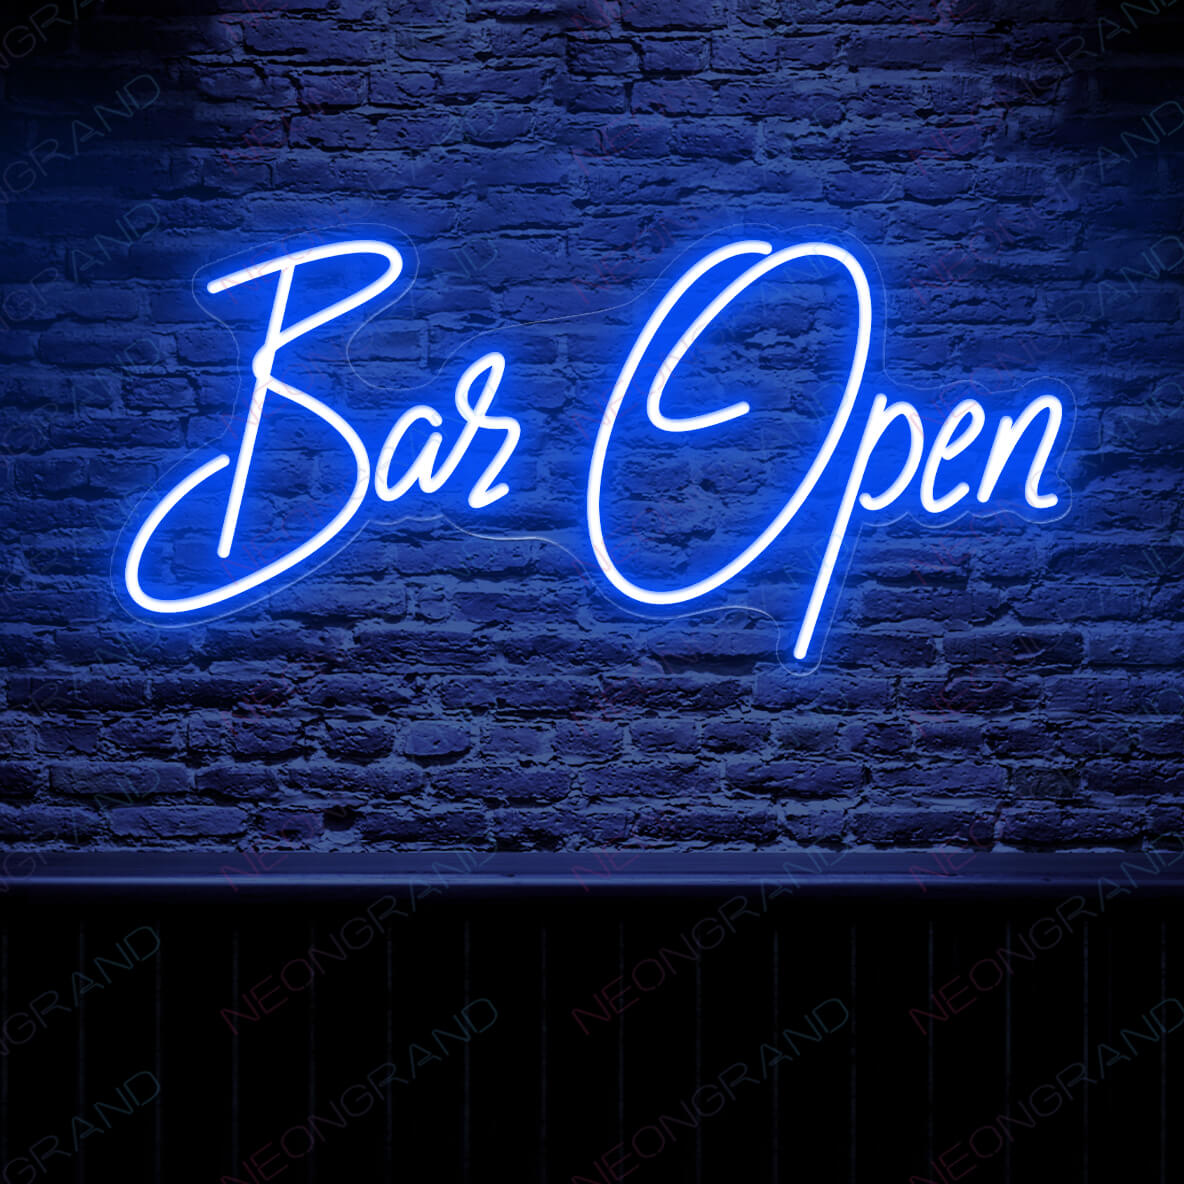 Open Sign Neon Aesthetic Led Light Bar Open blue